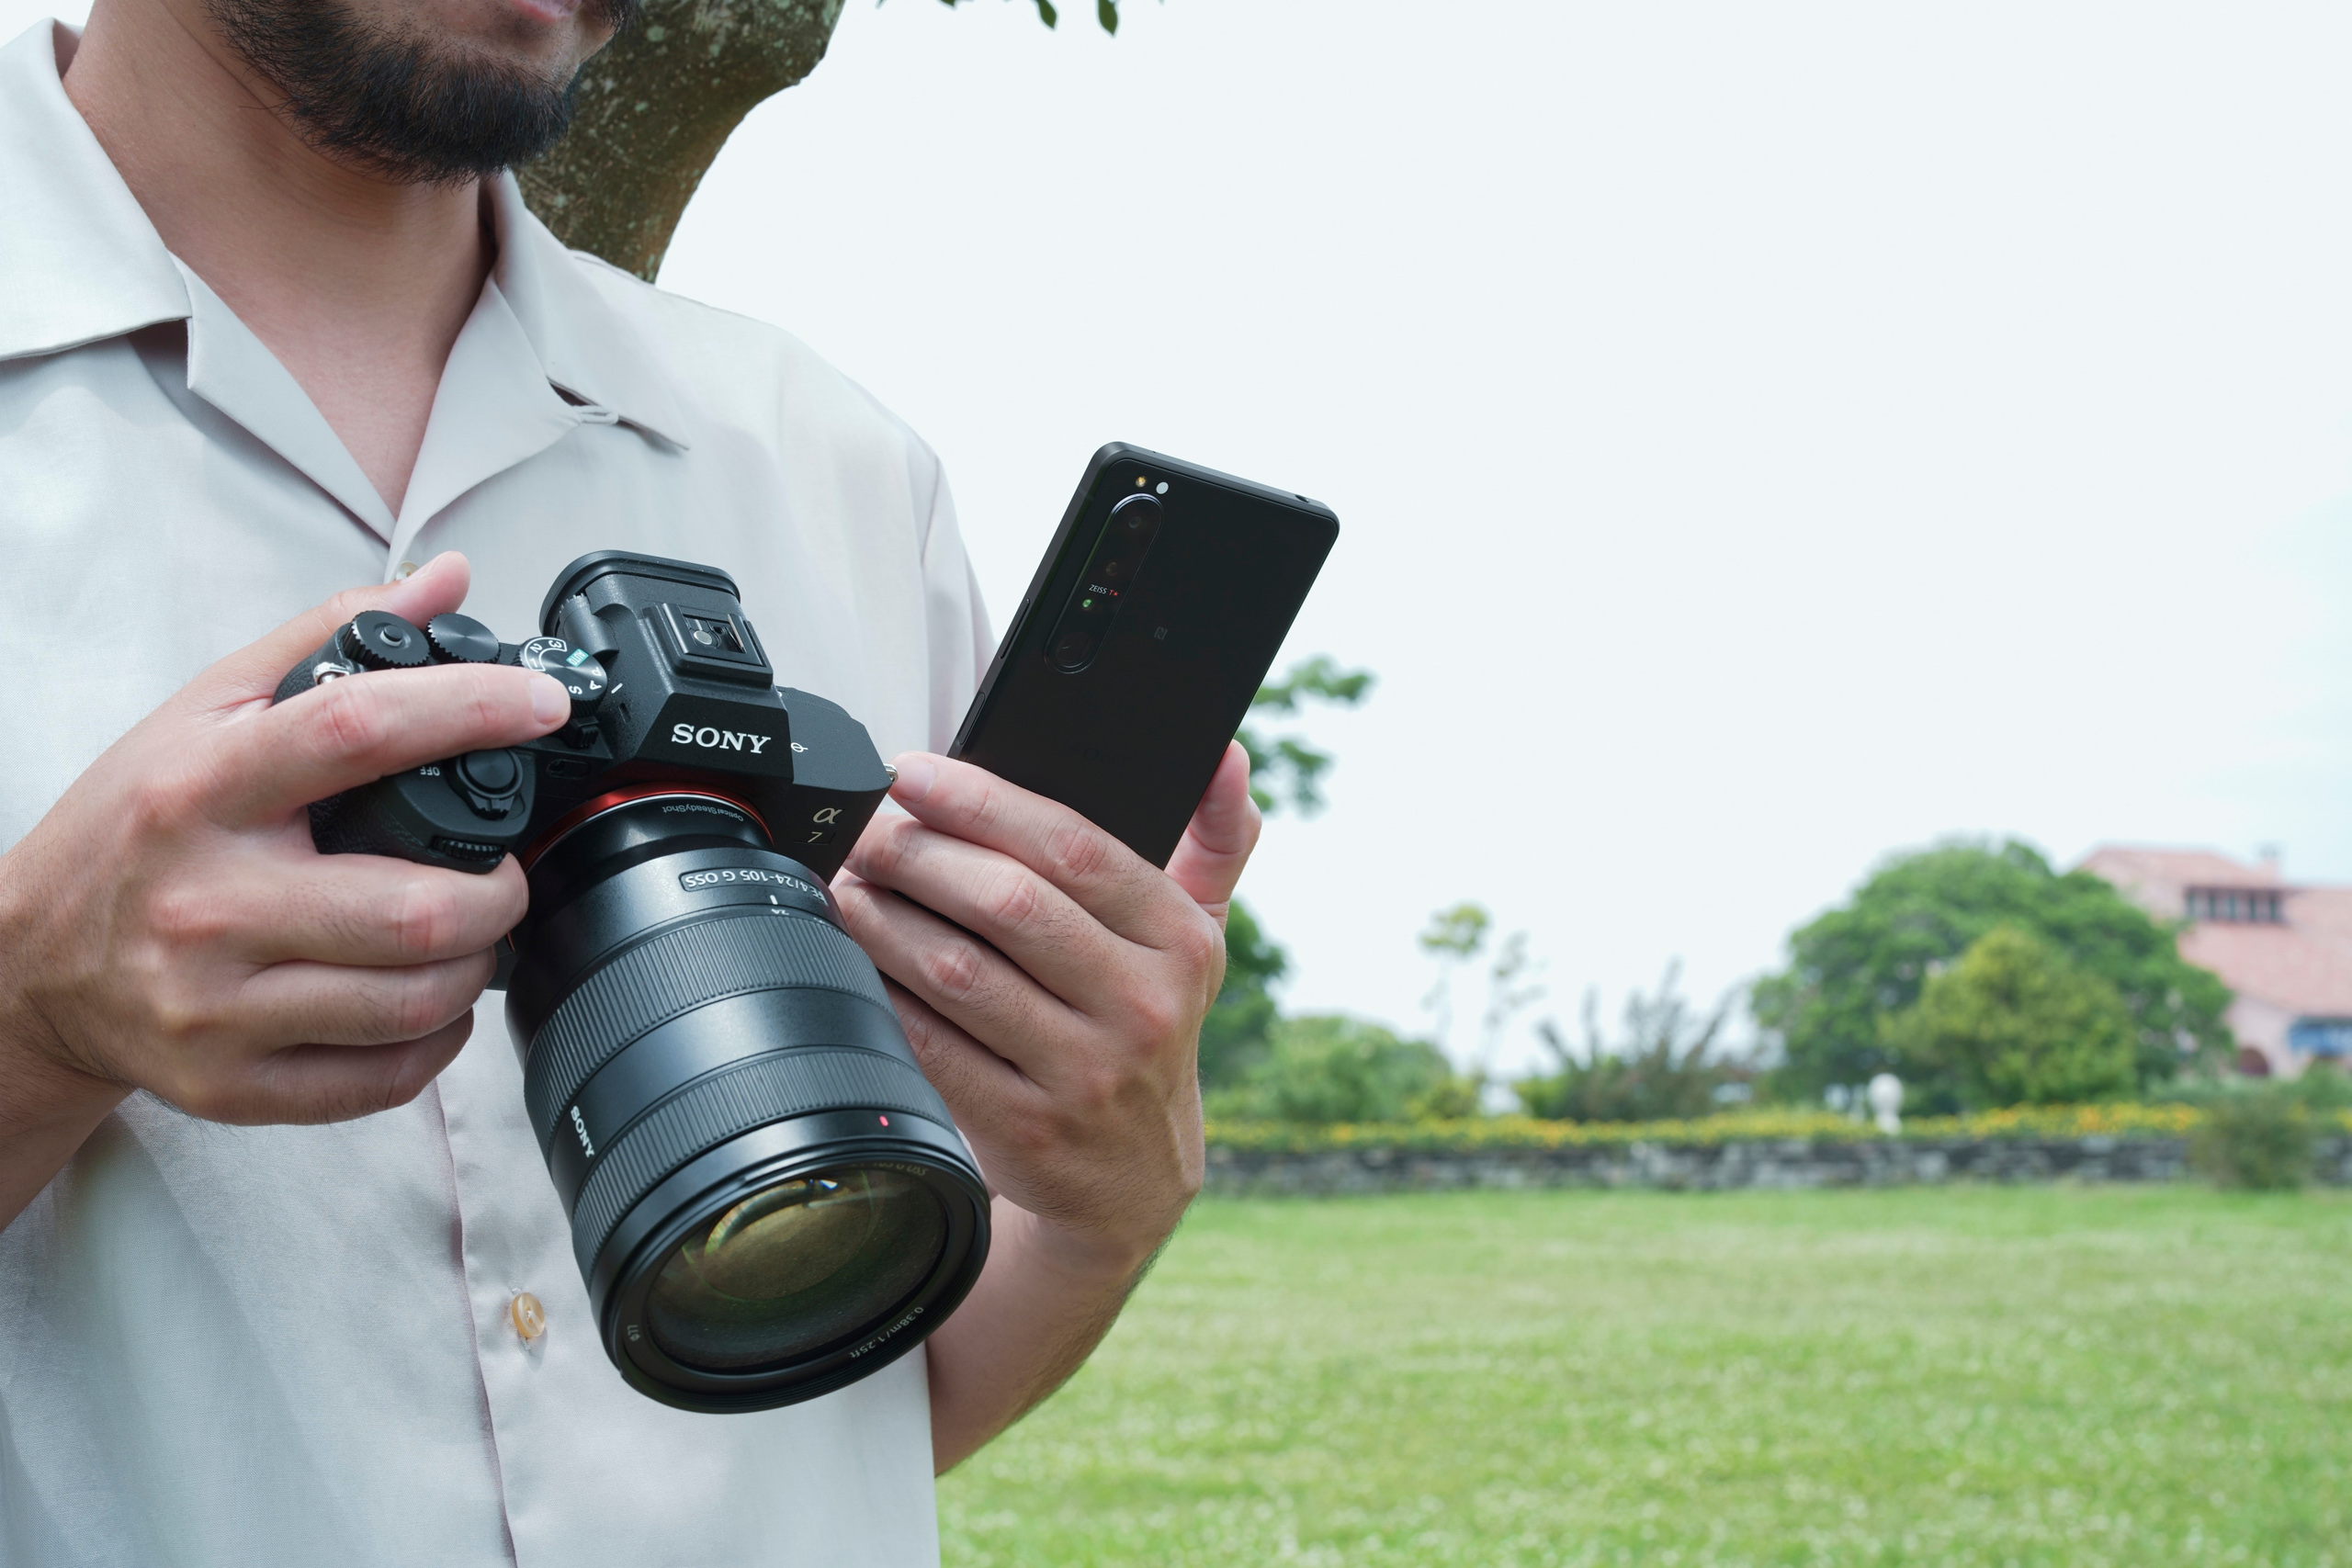 Sony Việt Nam ra mắt máy ảnh Sony A7 IV vượt trội với cảm biến full-frame 33 MP, giá 59,990,000 VND